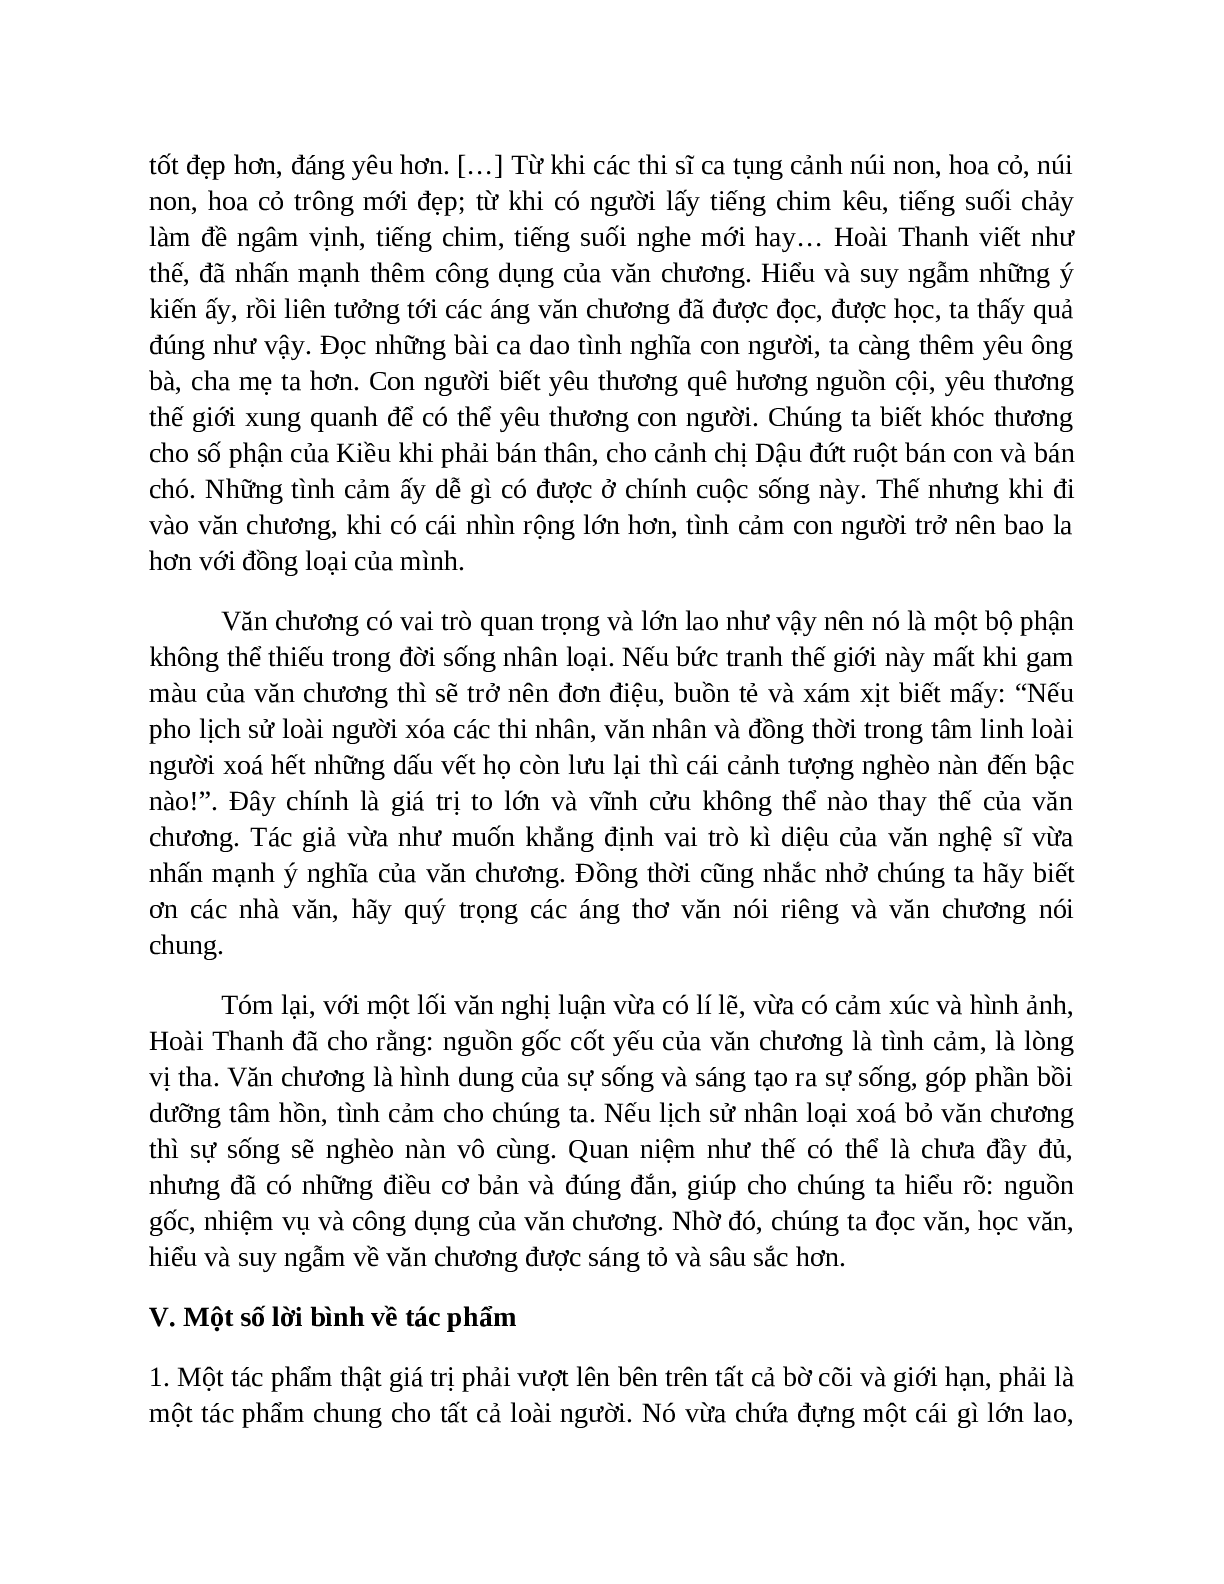 Sơ đồ tư duy bài Ý nghĩa văn chương dễ nhớ, ngắn nhất - Ngữ văn lớp 7 (trang 7)